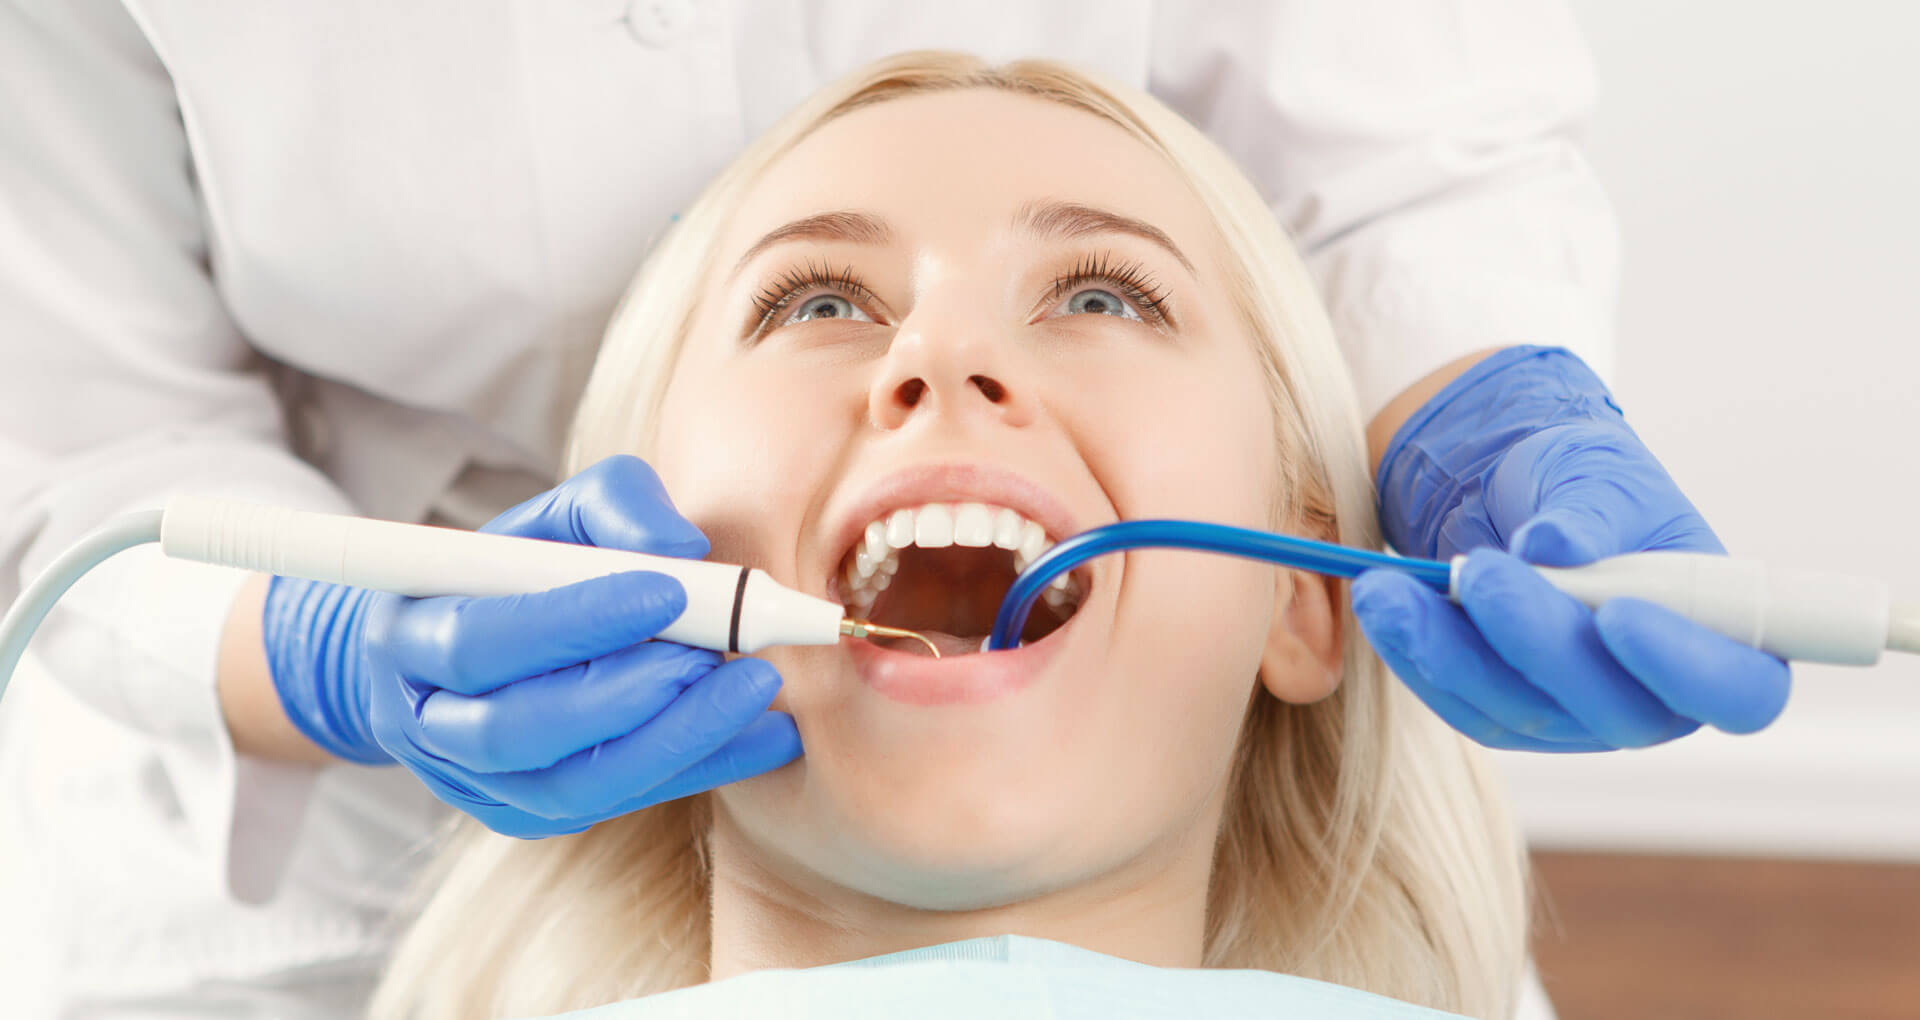 dentistica paciente em atendimento odontologico 